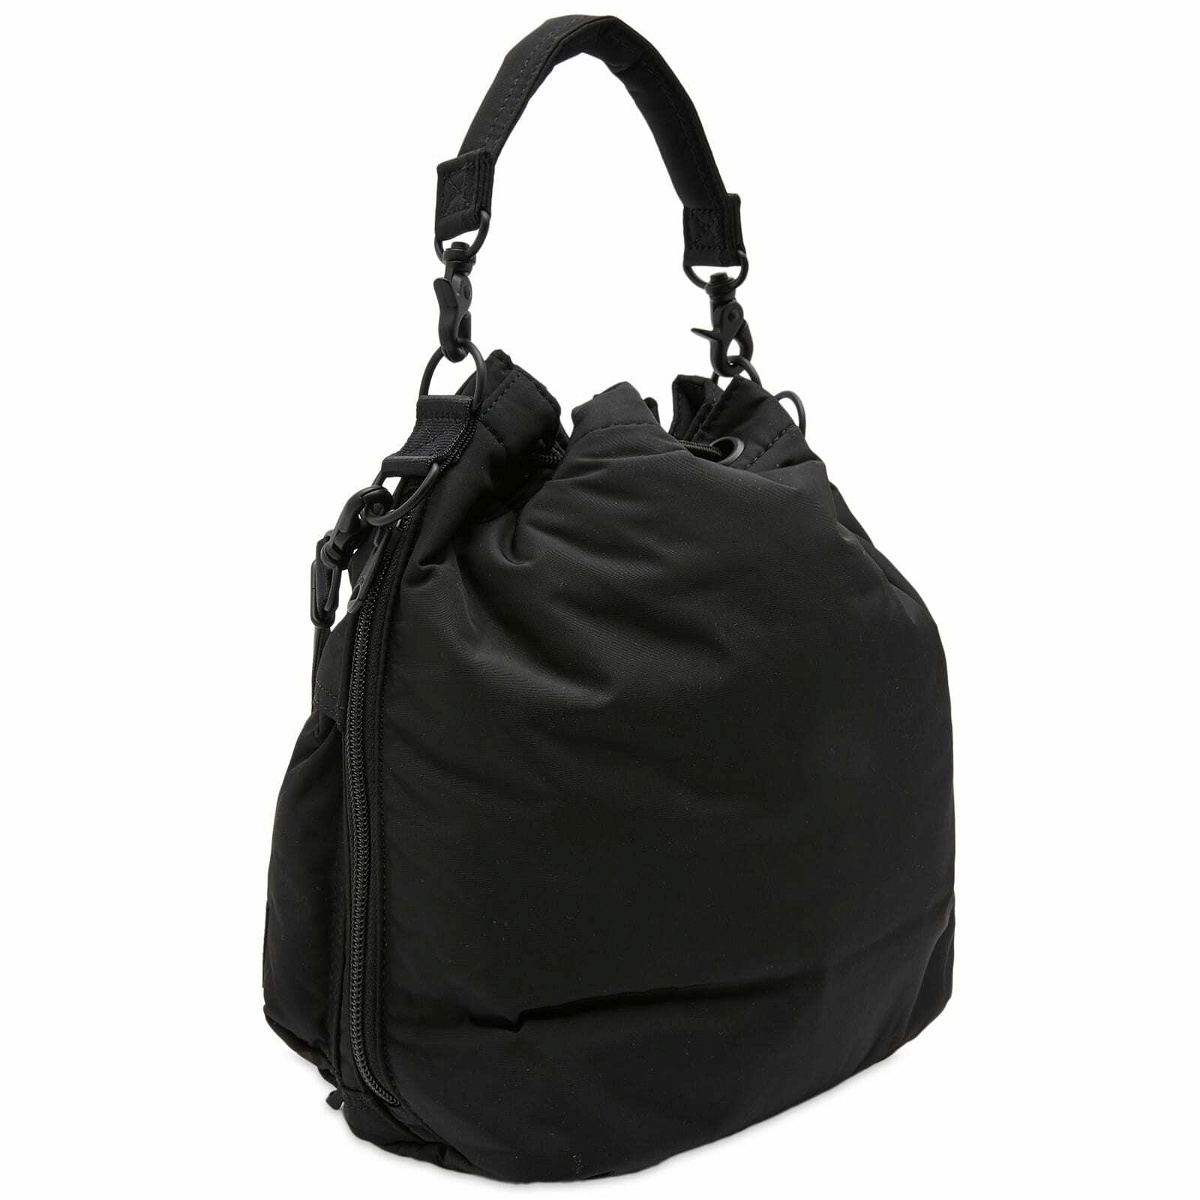 Porter-Yoshida & Co. Senses Tool Bag in Black Porter-Yoshida & Co.